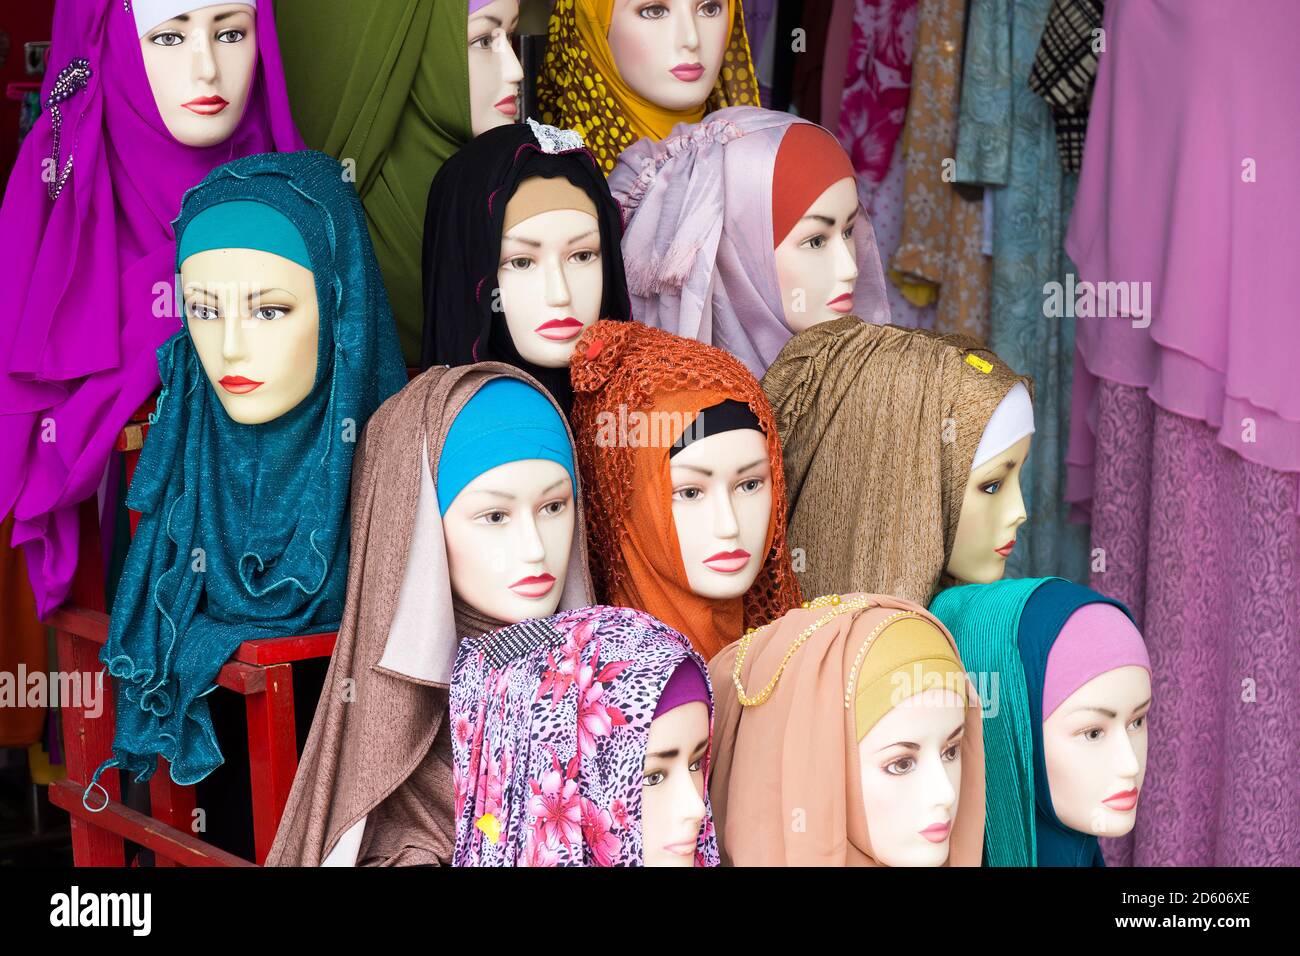 Indonesien, Belitung, Kopftuch in einem Bekleidungsgeschäft Stockfoto